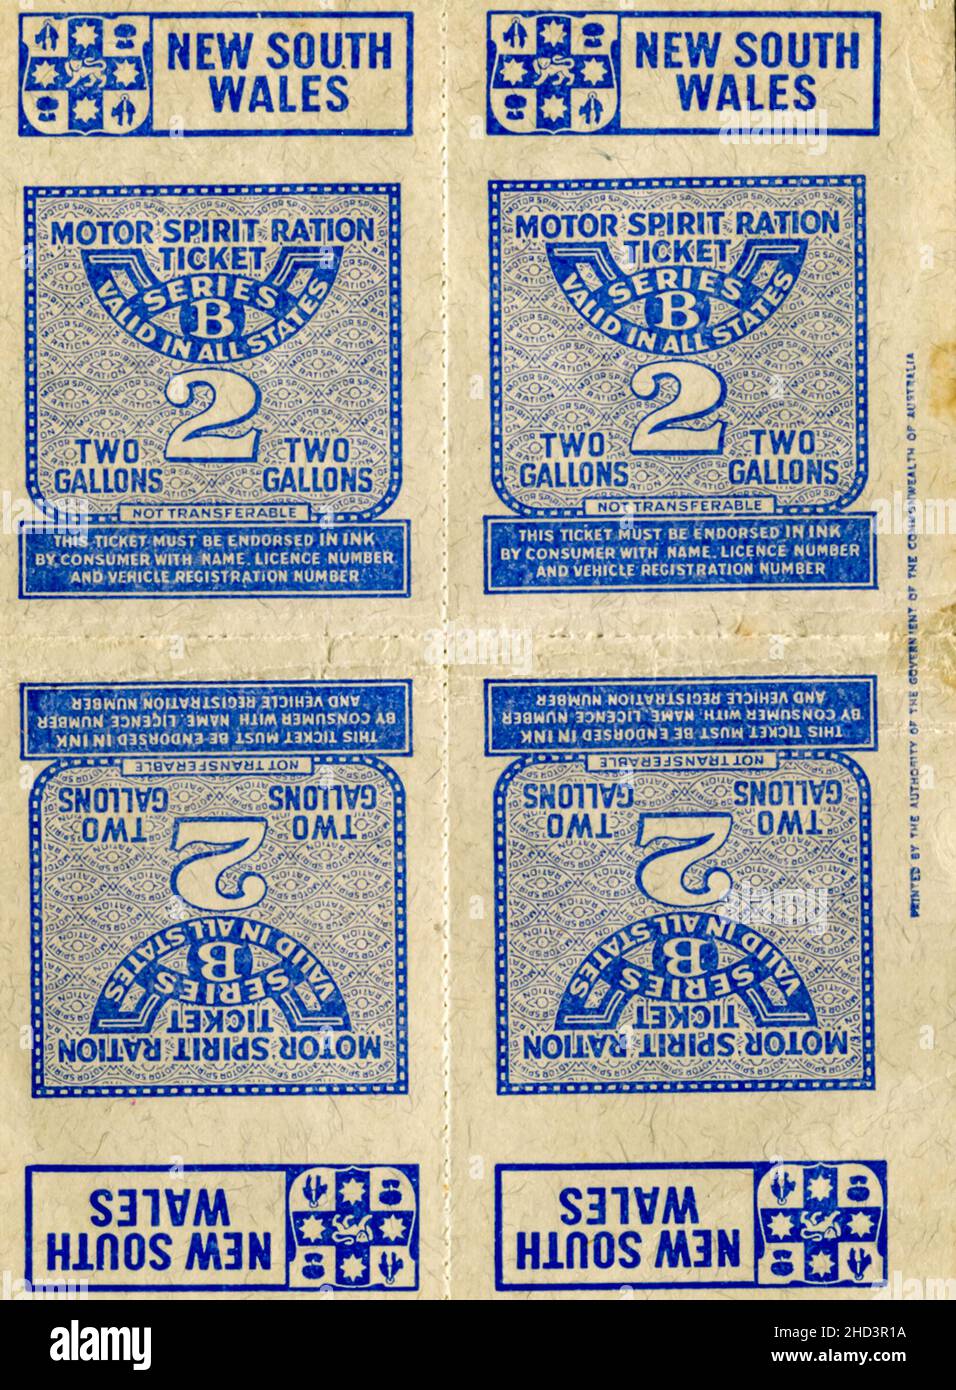 I francobolli di razione del combustibile della seconda guerra mondiale emessi dal governo del nuovo Galles del Sud (NSW). Biglietto di razione Motor Spirit Serie B per 2 galloni ciascuno. Foto Stock